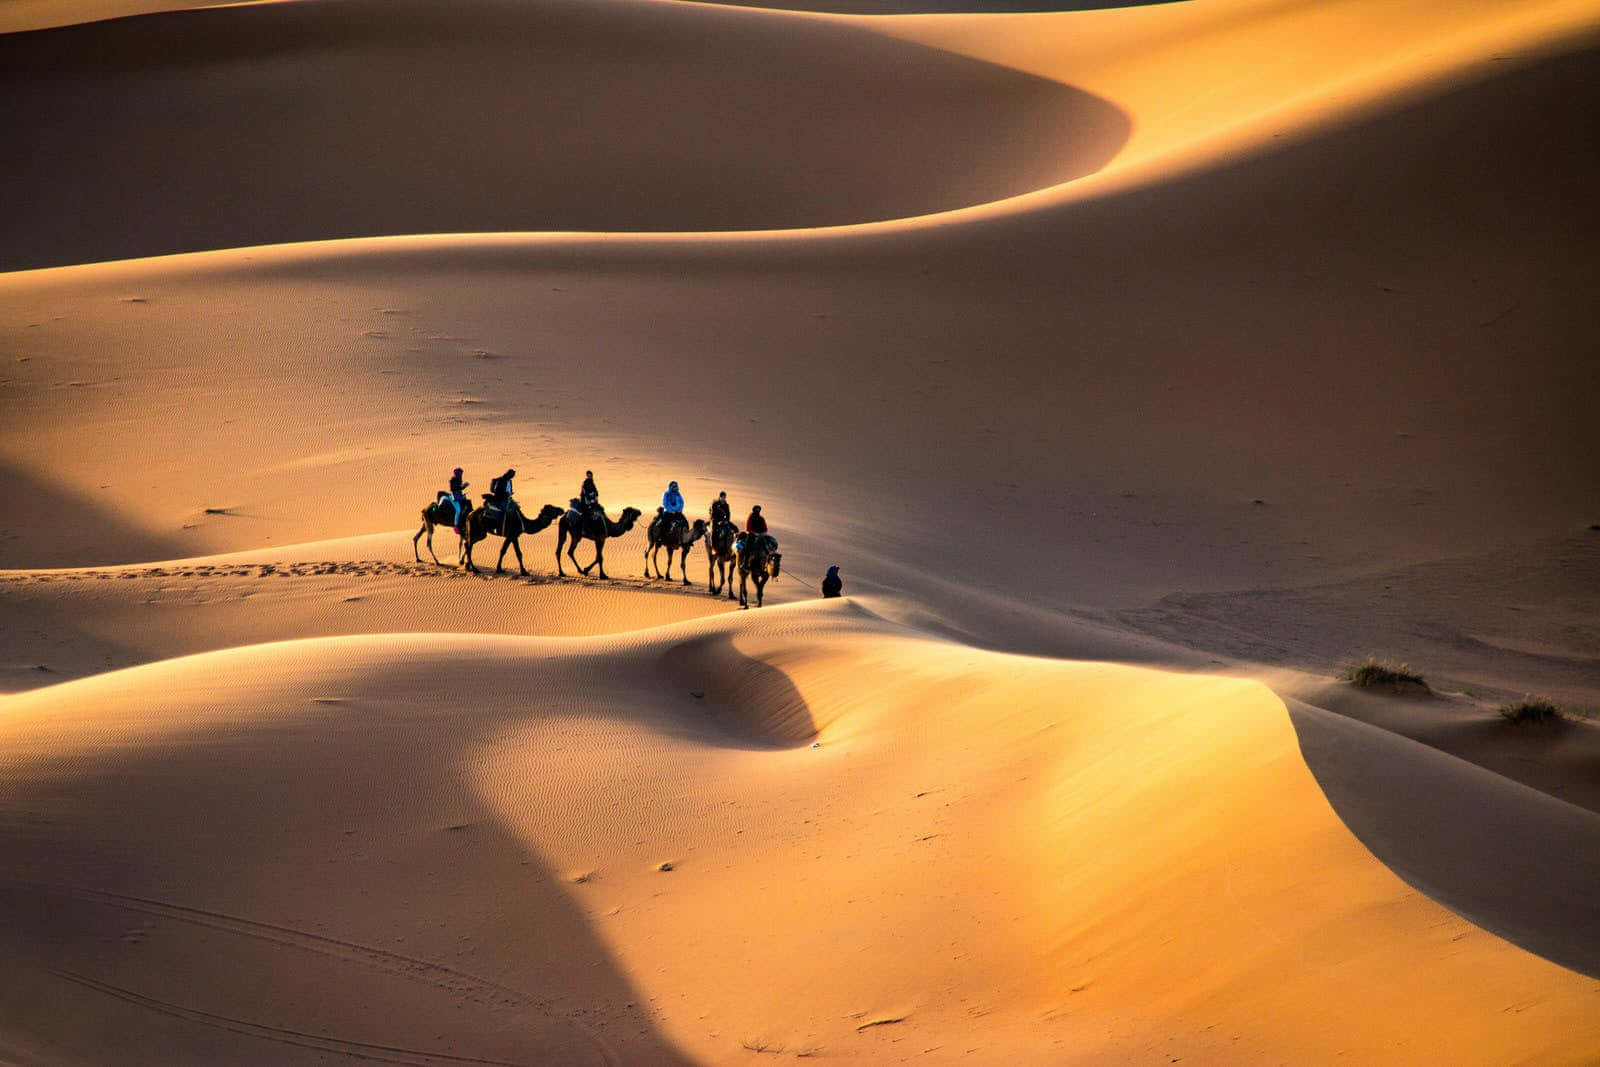 Forbløffendeudsigt Over Gyldent Sand Midt I Ørkenen.